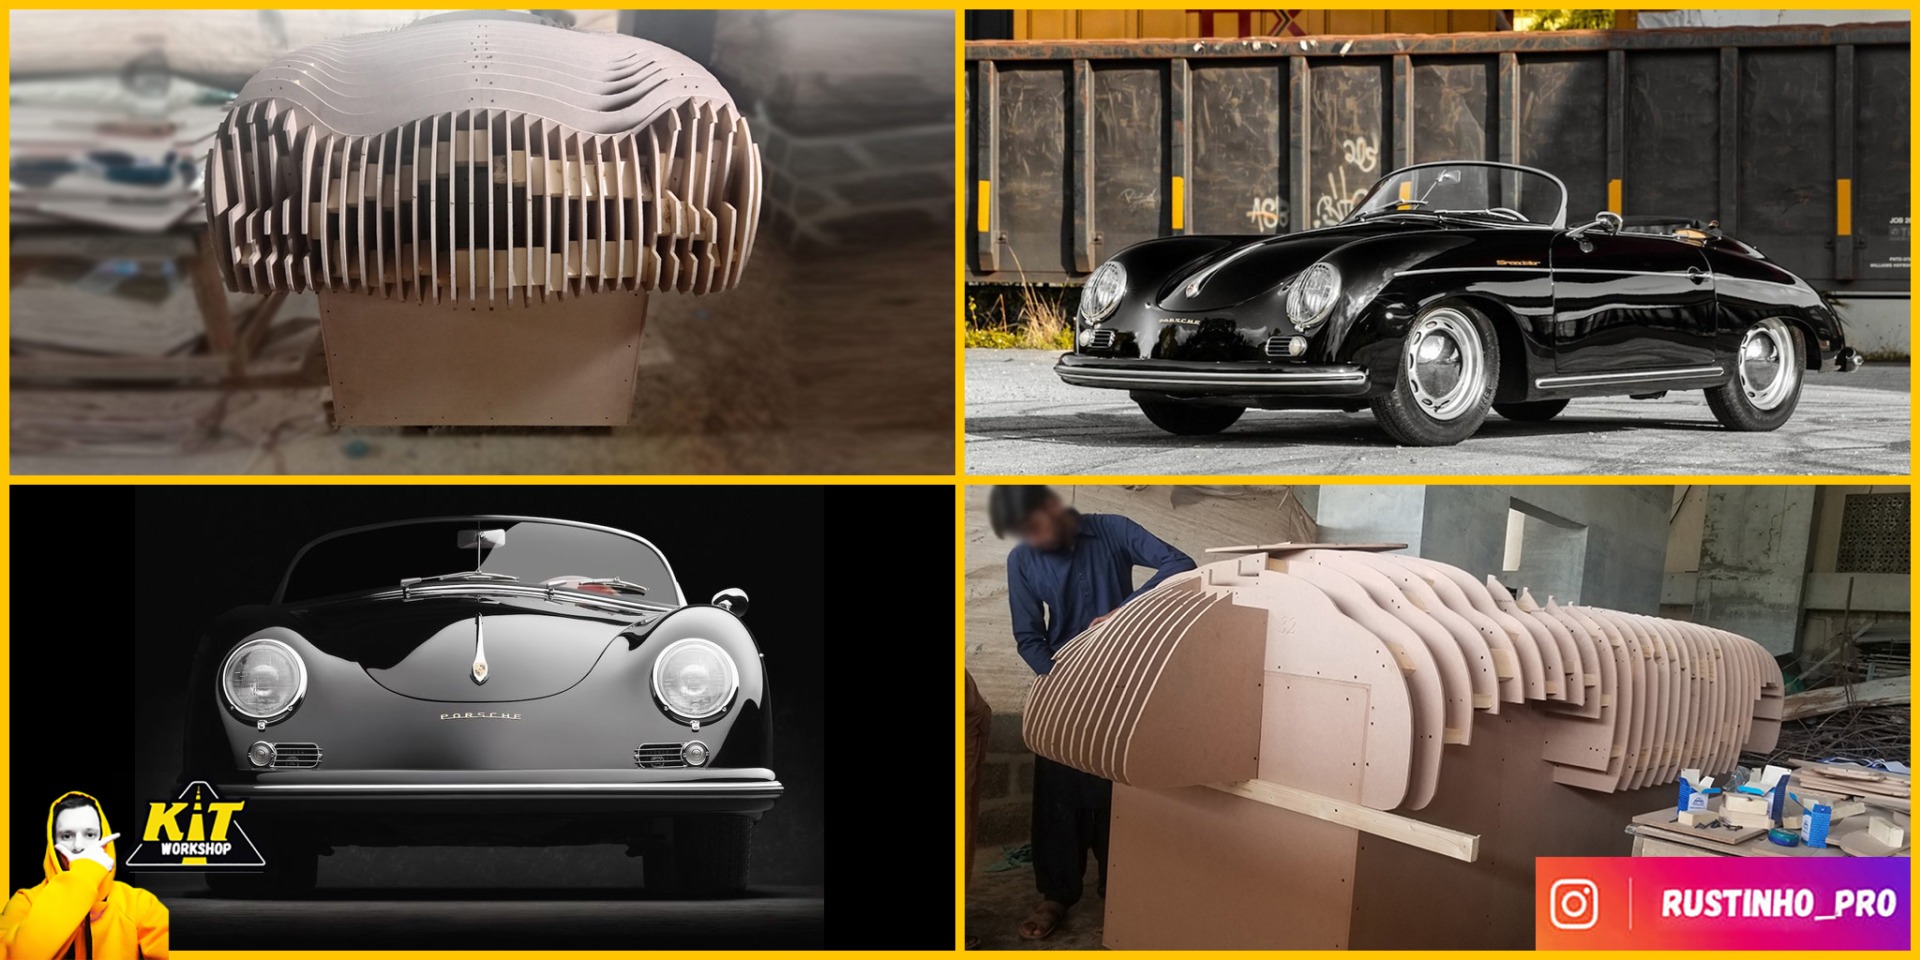 Porsche 356 Speedster replica build from car buck files 